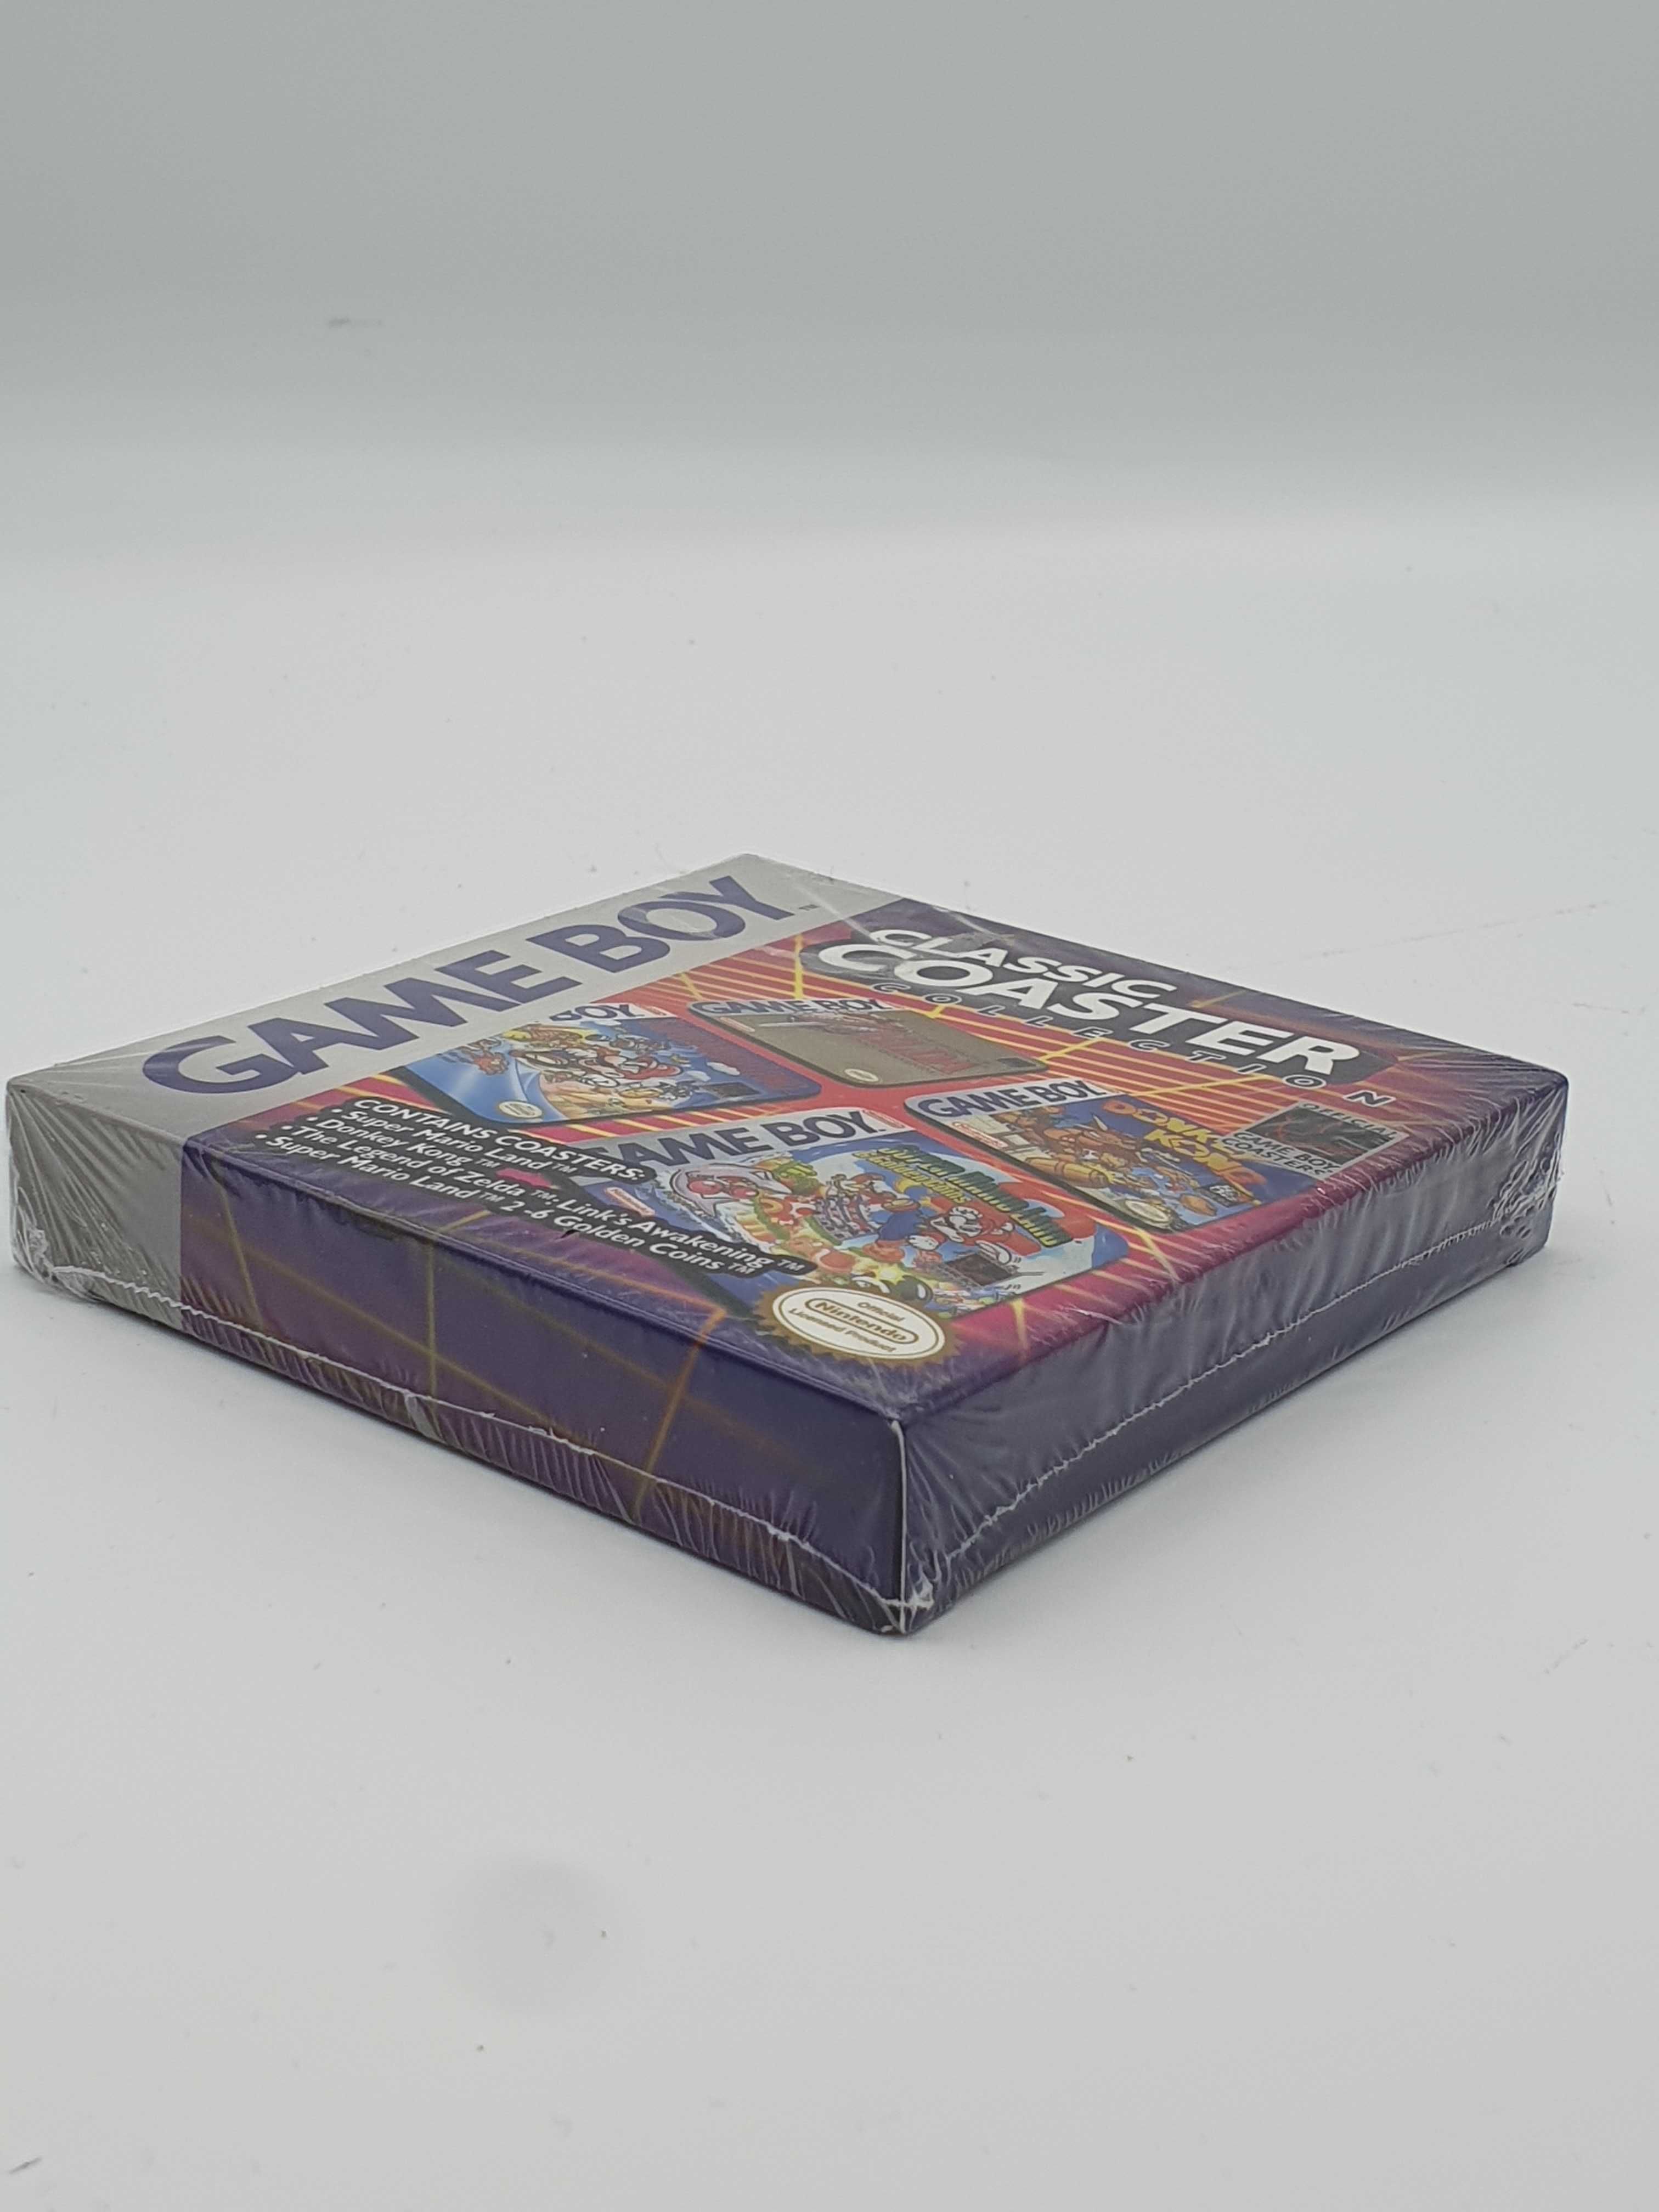 Podkładki pod kubek Game Boy 4szt.